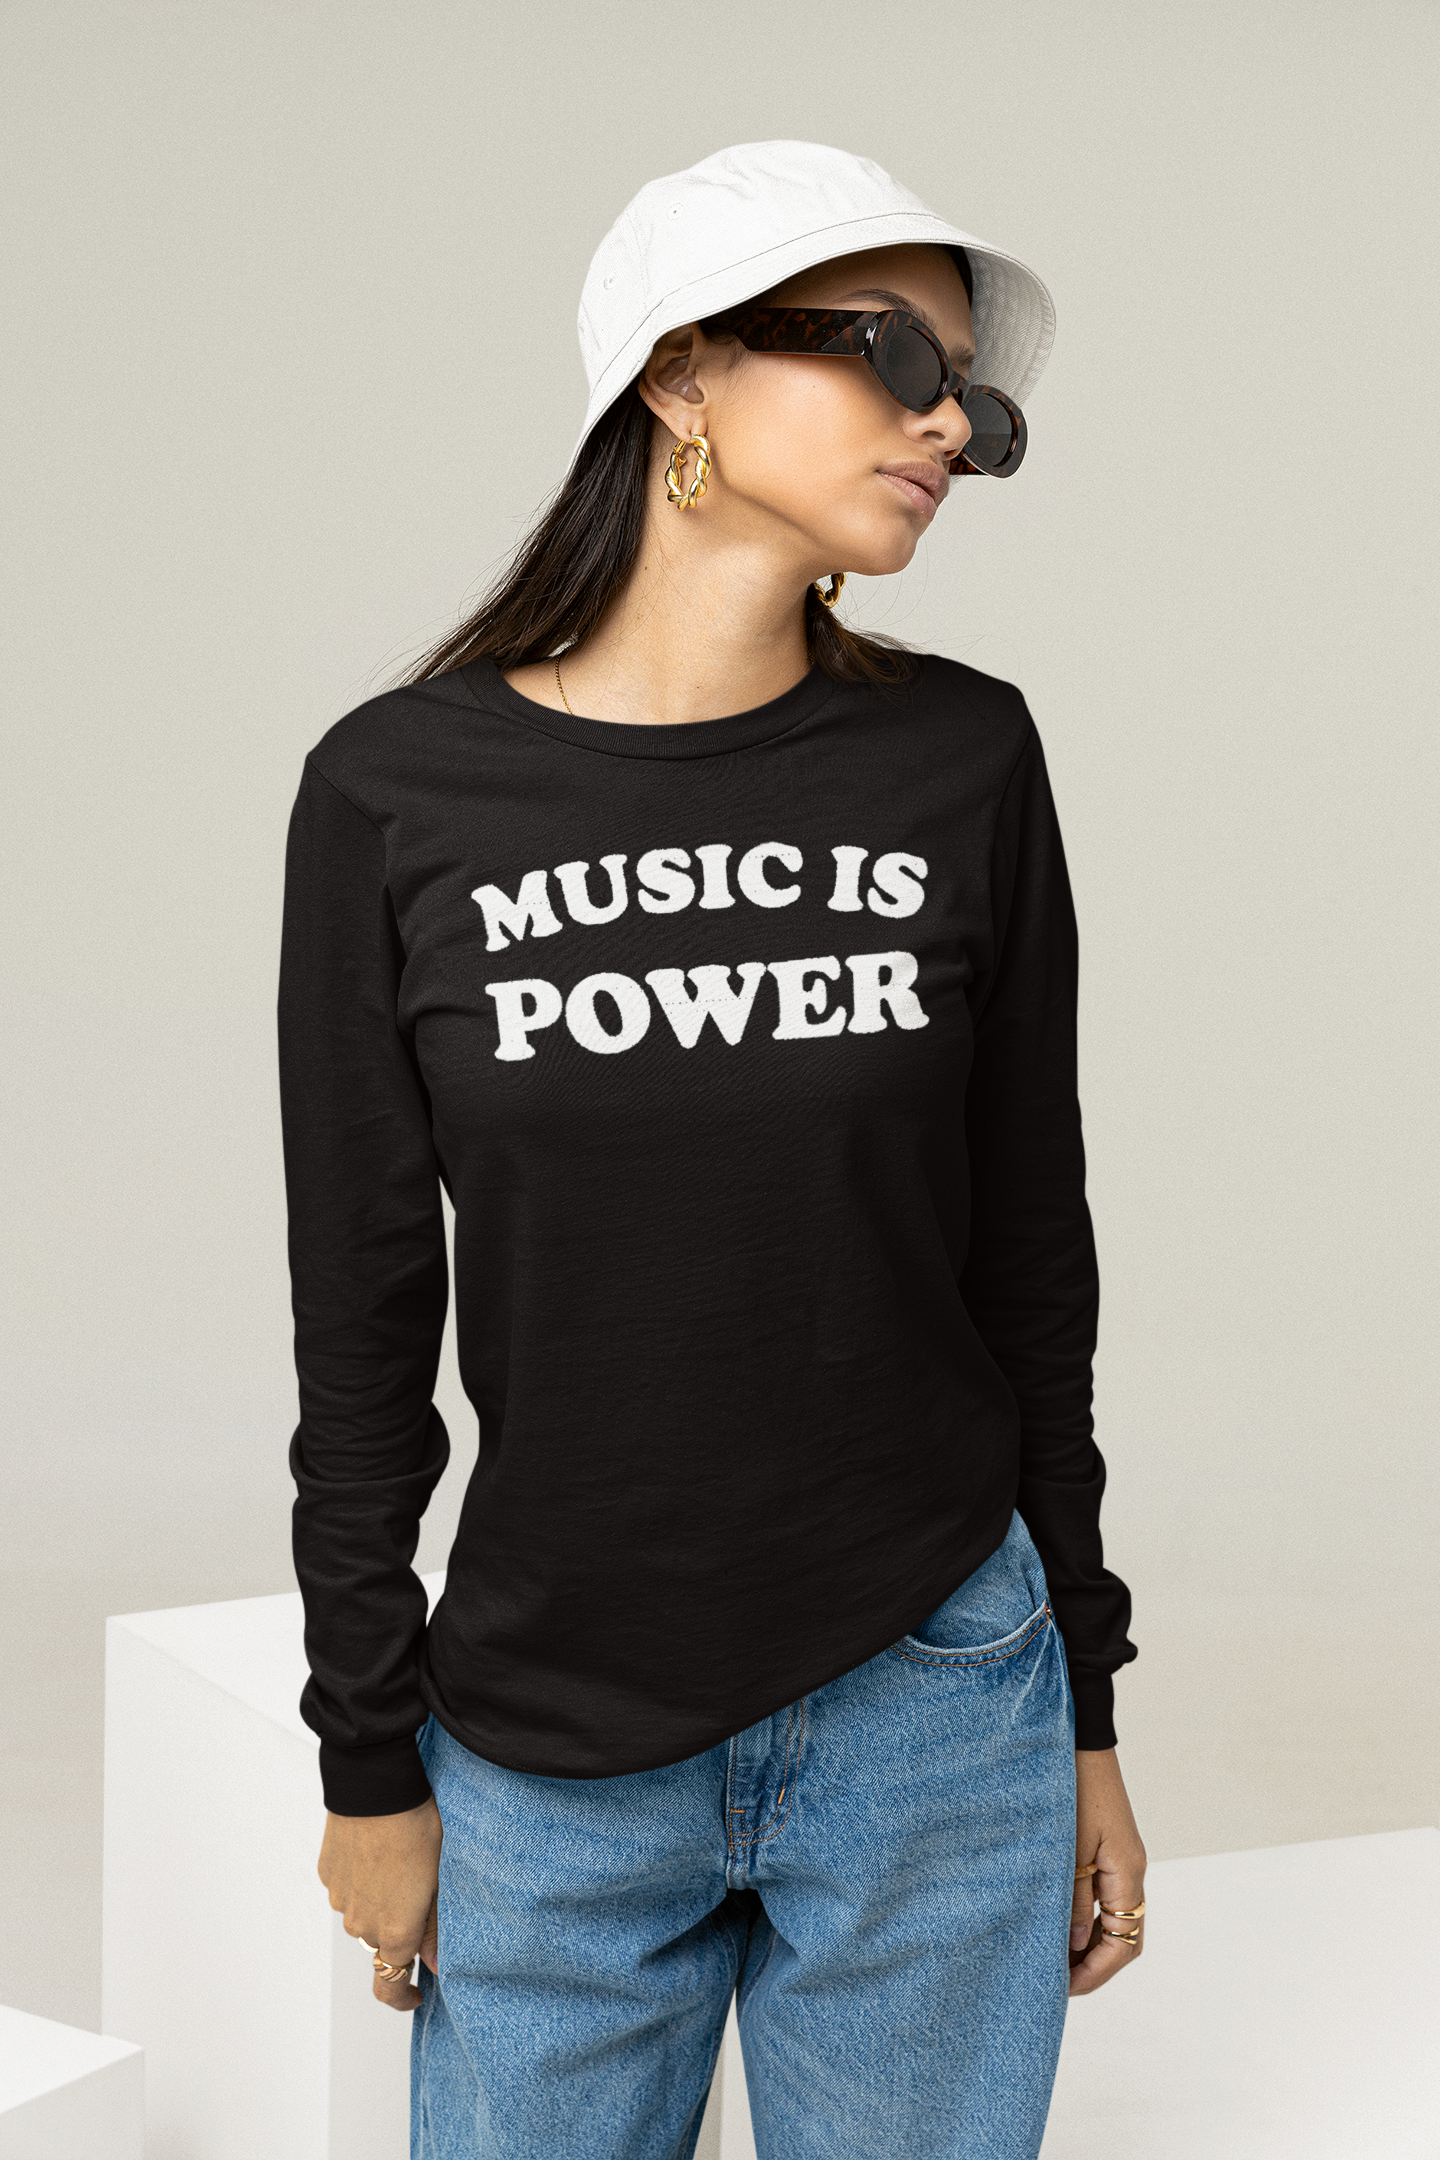 Music Is Power camiseta de manga larga unisex bordada - bordado blanco